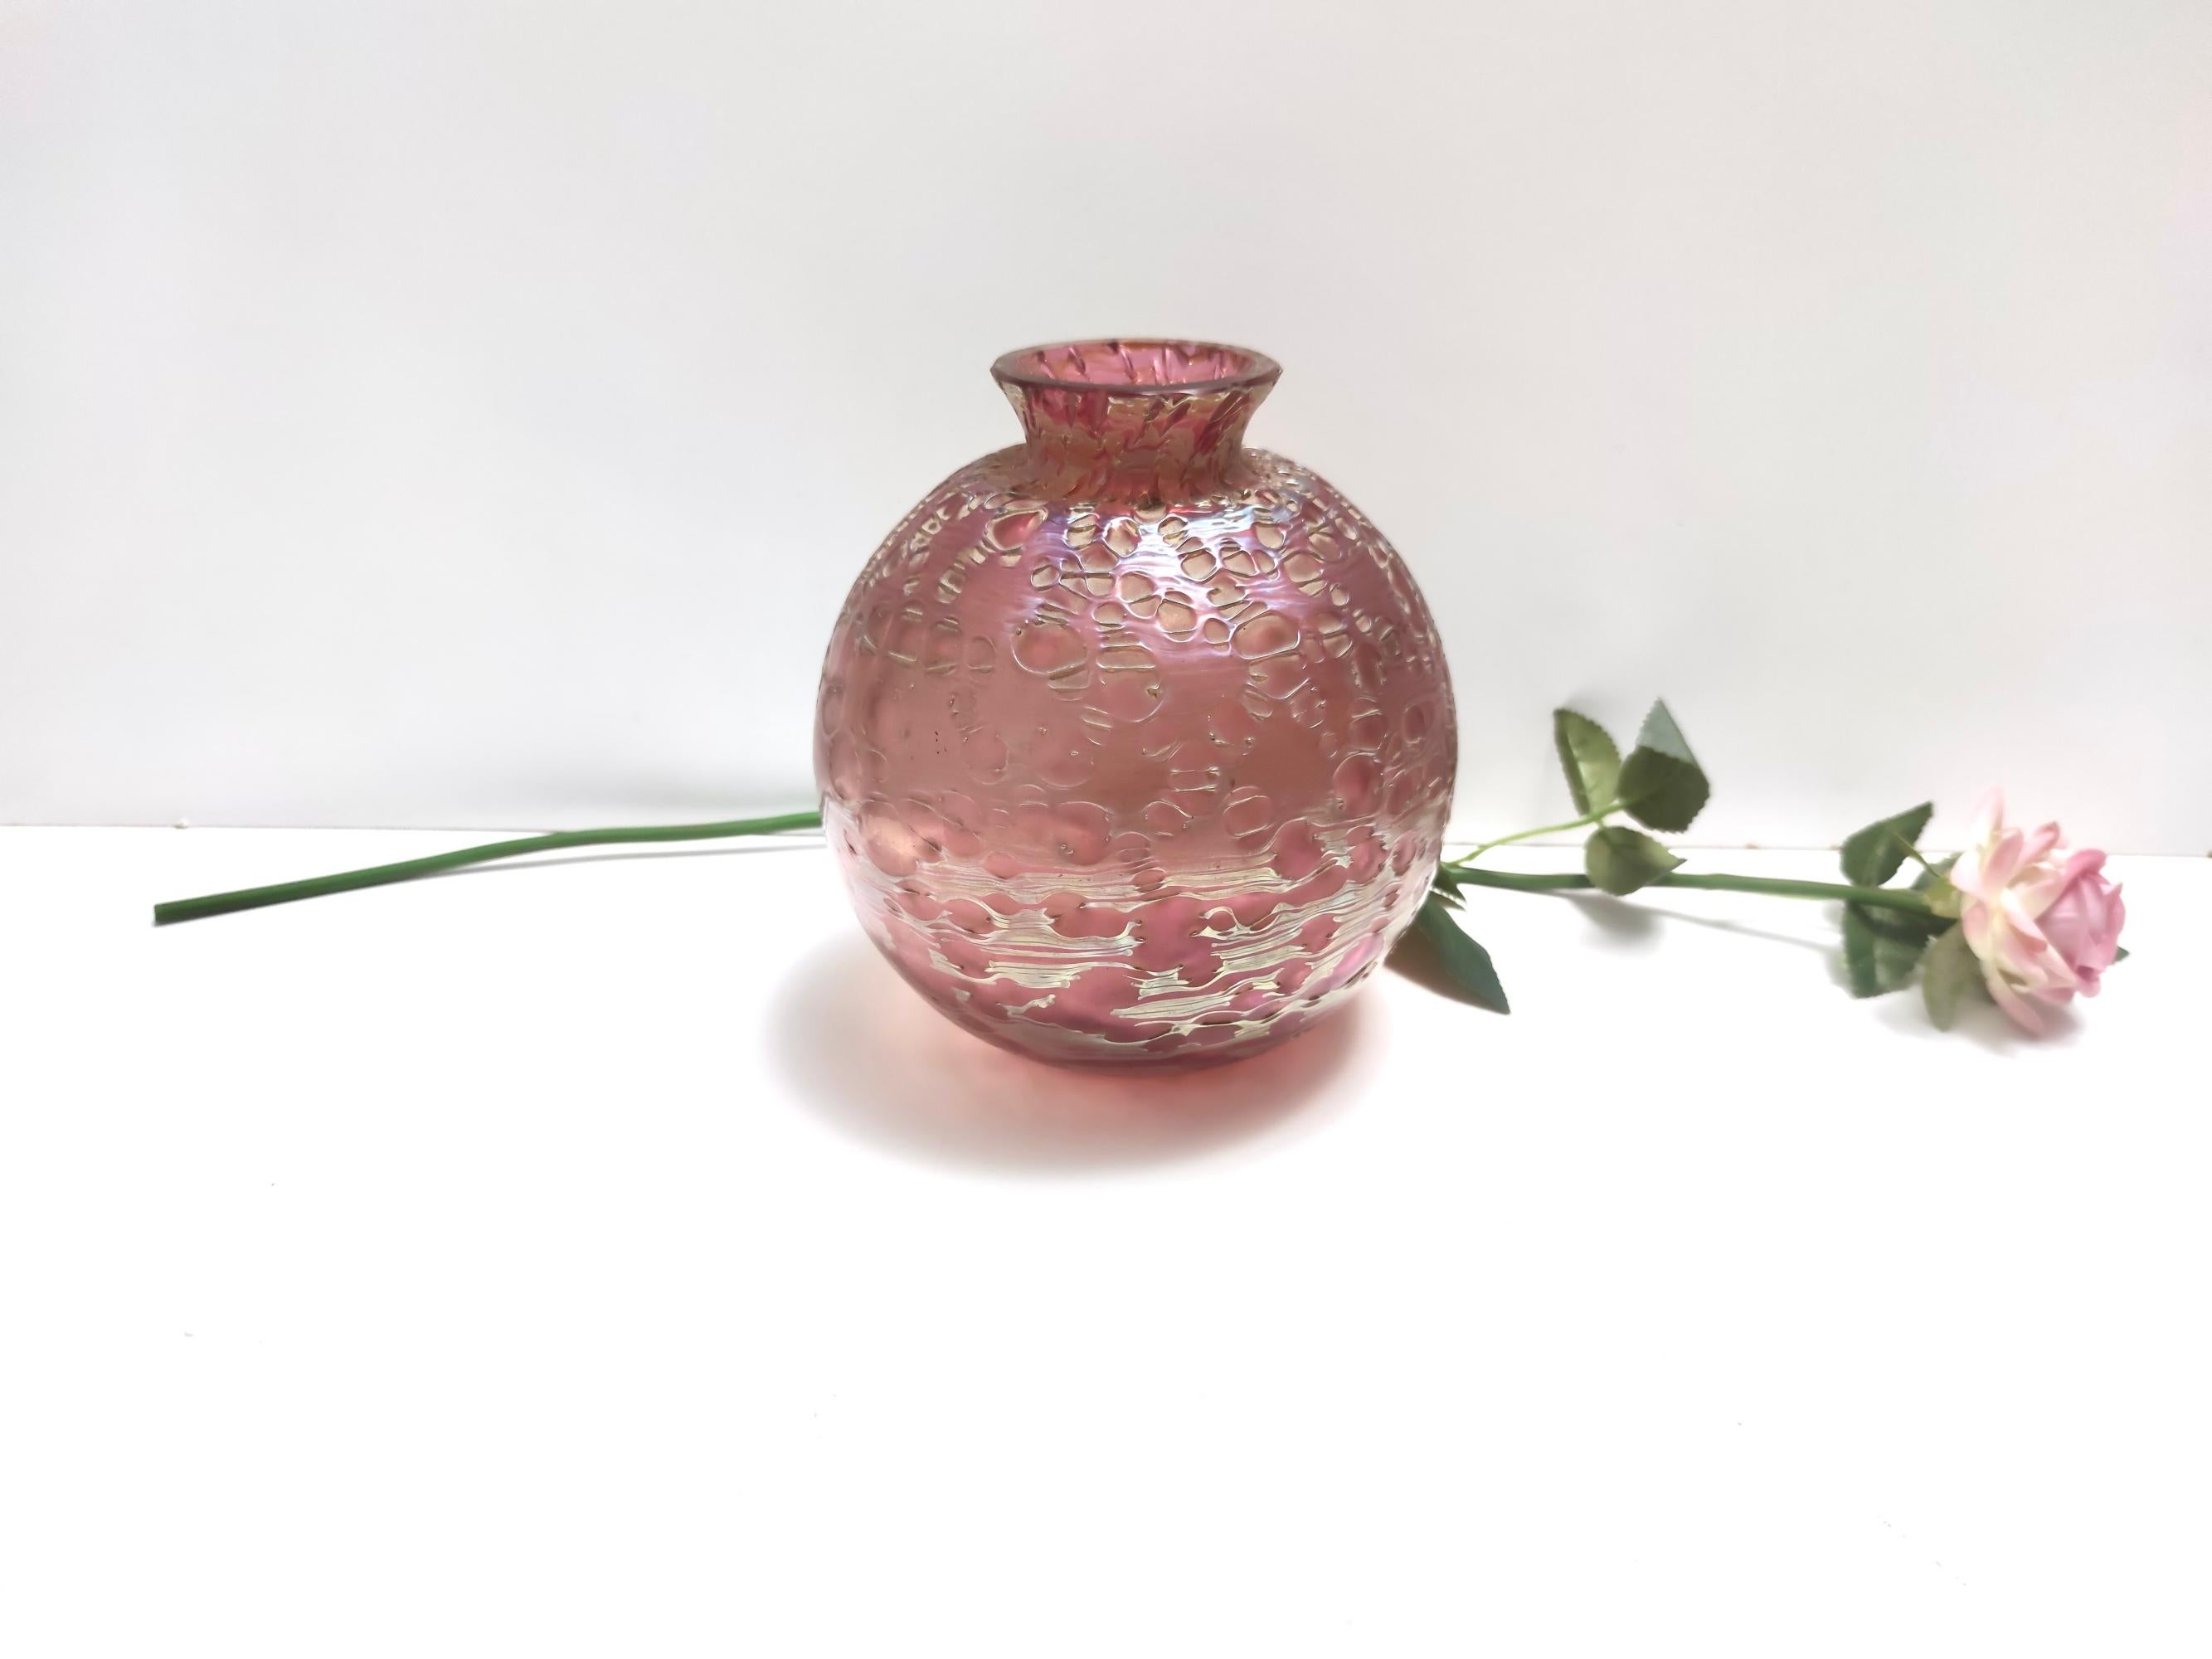 Hergestellt aus geätztem mundgeblasenem rosa Glas mit schillernden und materiellen Effekten. 
Da es sich um einen Vintage-Artikel handelt, kann er leichte Gebrauchsspuren aufweisen, aber er ist in einem sehr guten Originalzustand und bereit, ein